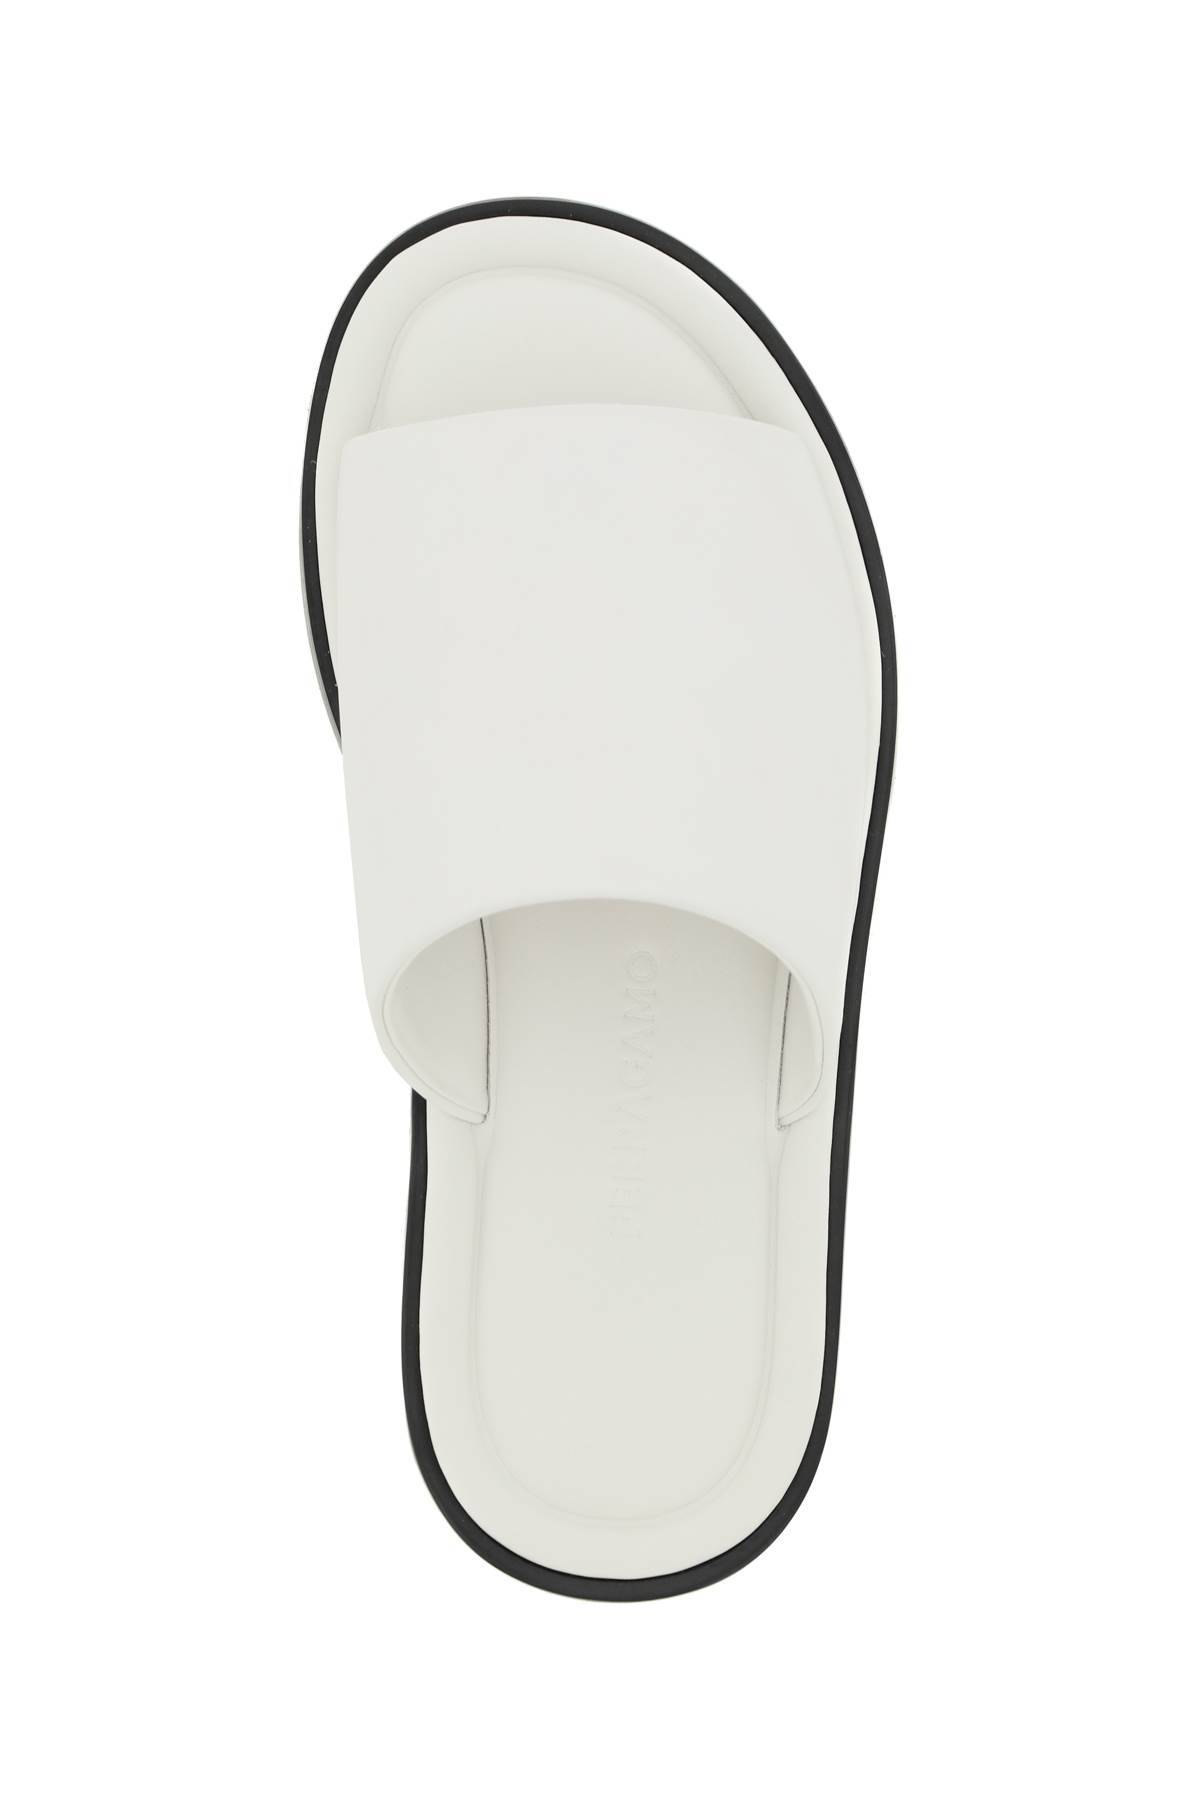 Shop Ferragamo Leather Slides In White